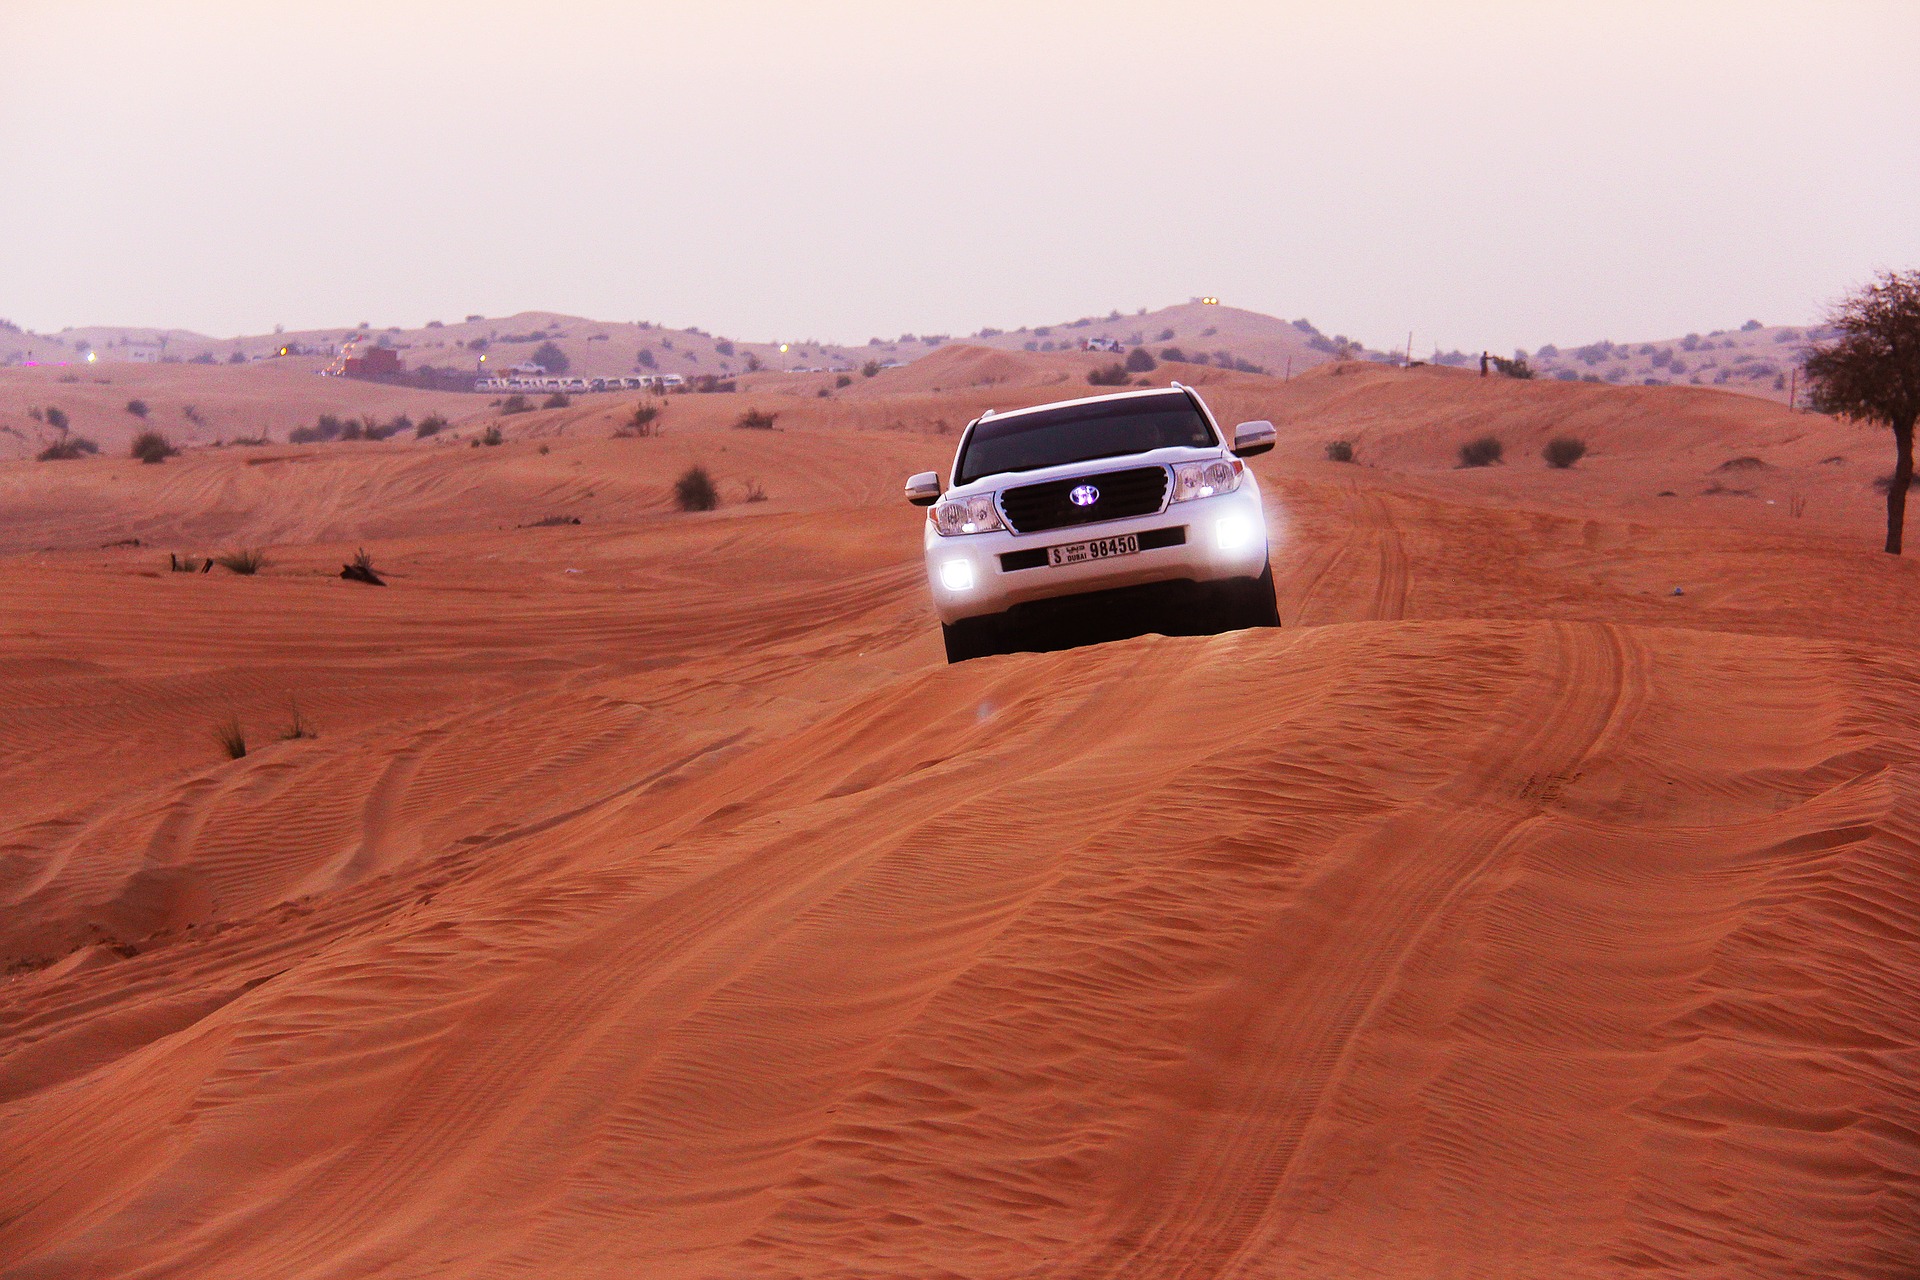 Urlaub in der Wüste der Vereinigten Emiraten mit einem Mietfahrzeug planen